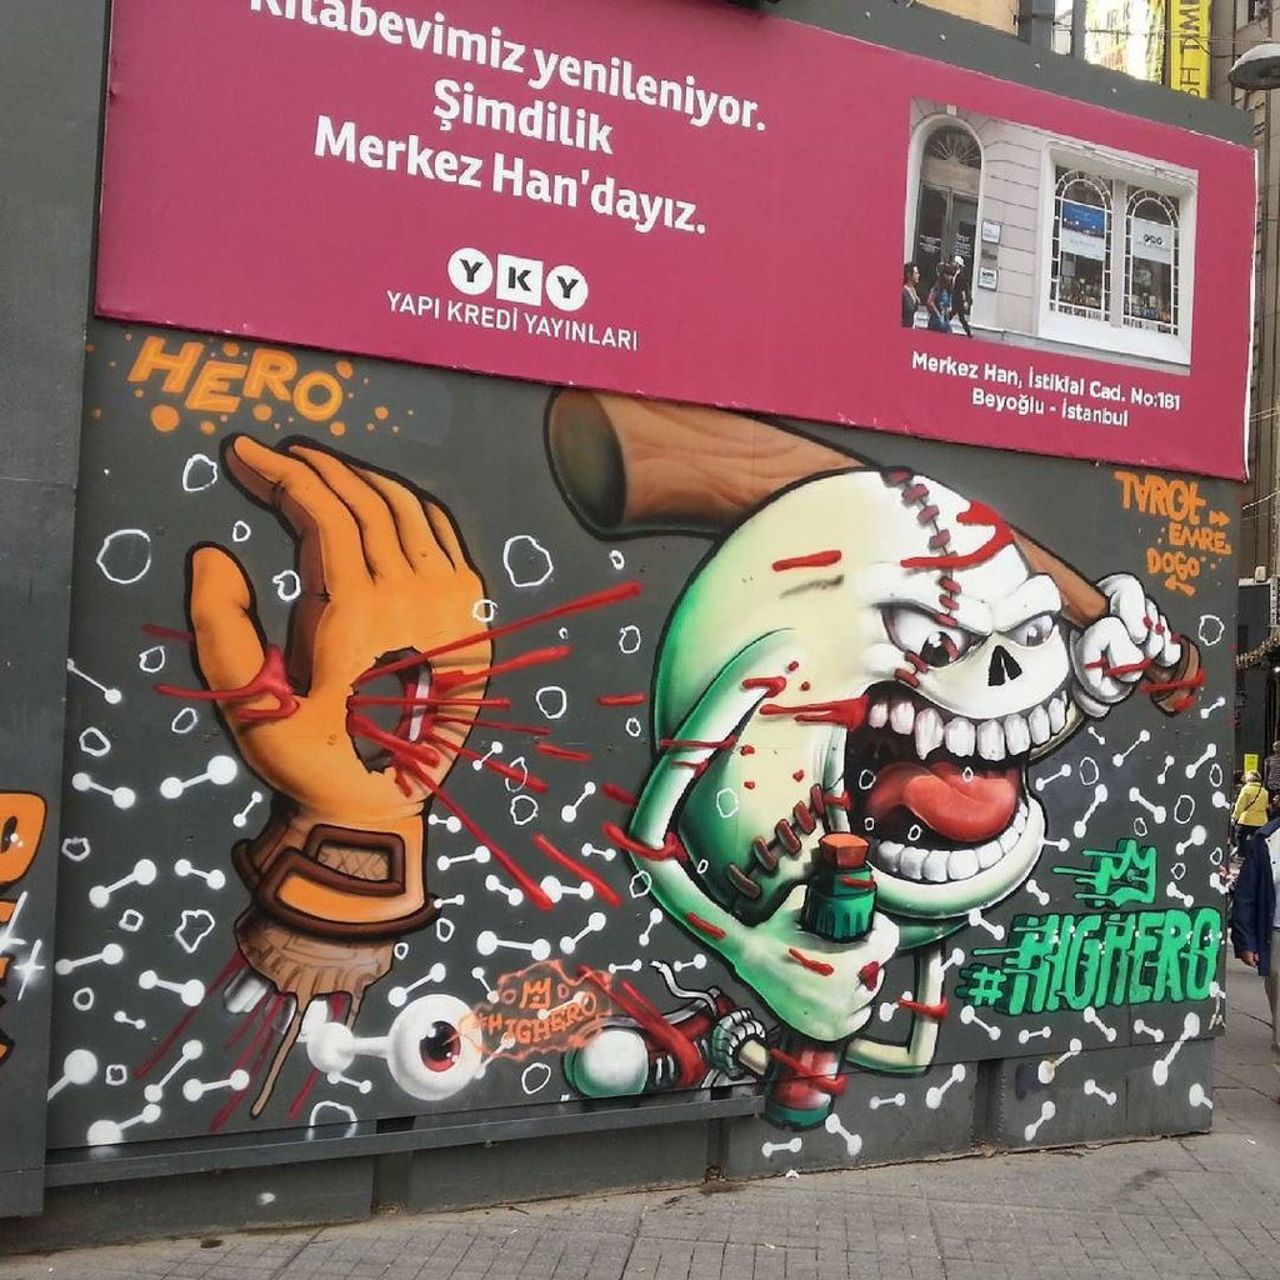 #streetart #graffiti #publicart #urbanart #sokaksanatı #streetartistanbul #istanbulstreetart #graffitiart by wallen… https://t.co/zNfmwWiTnL